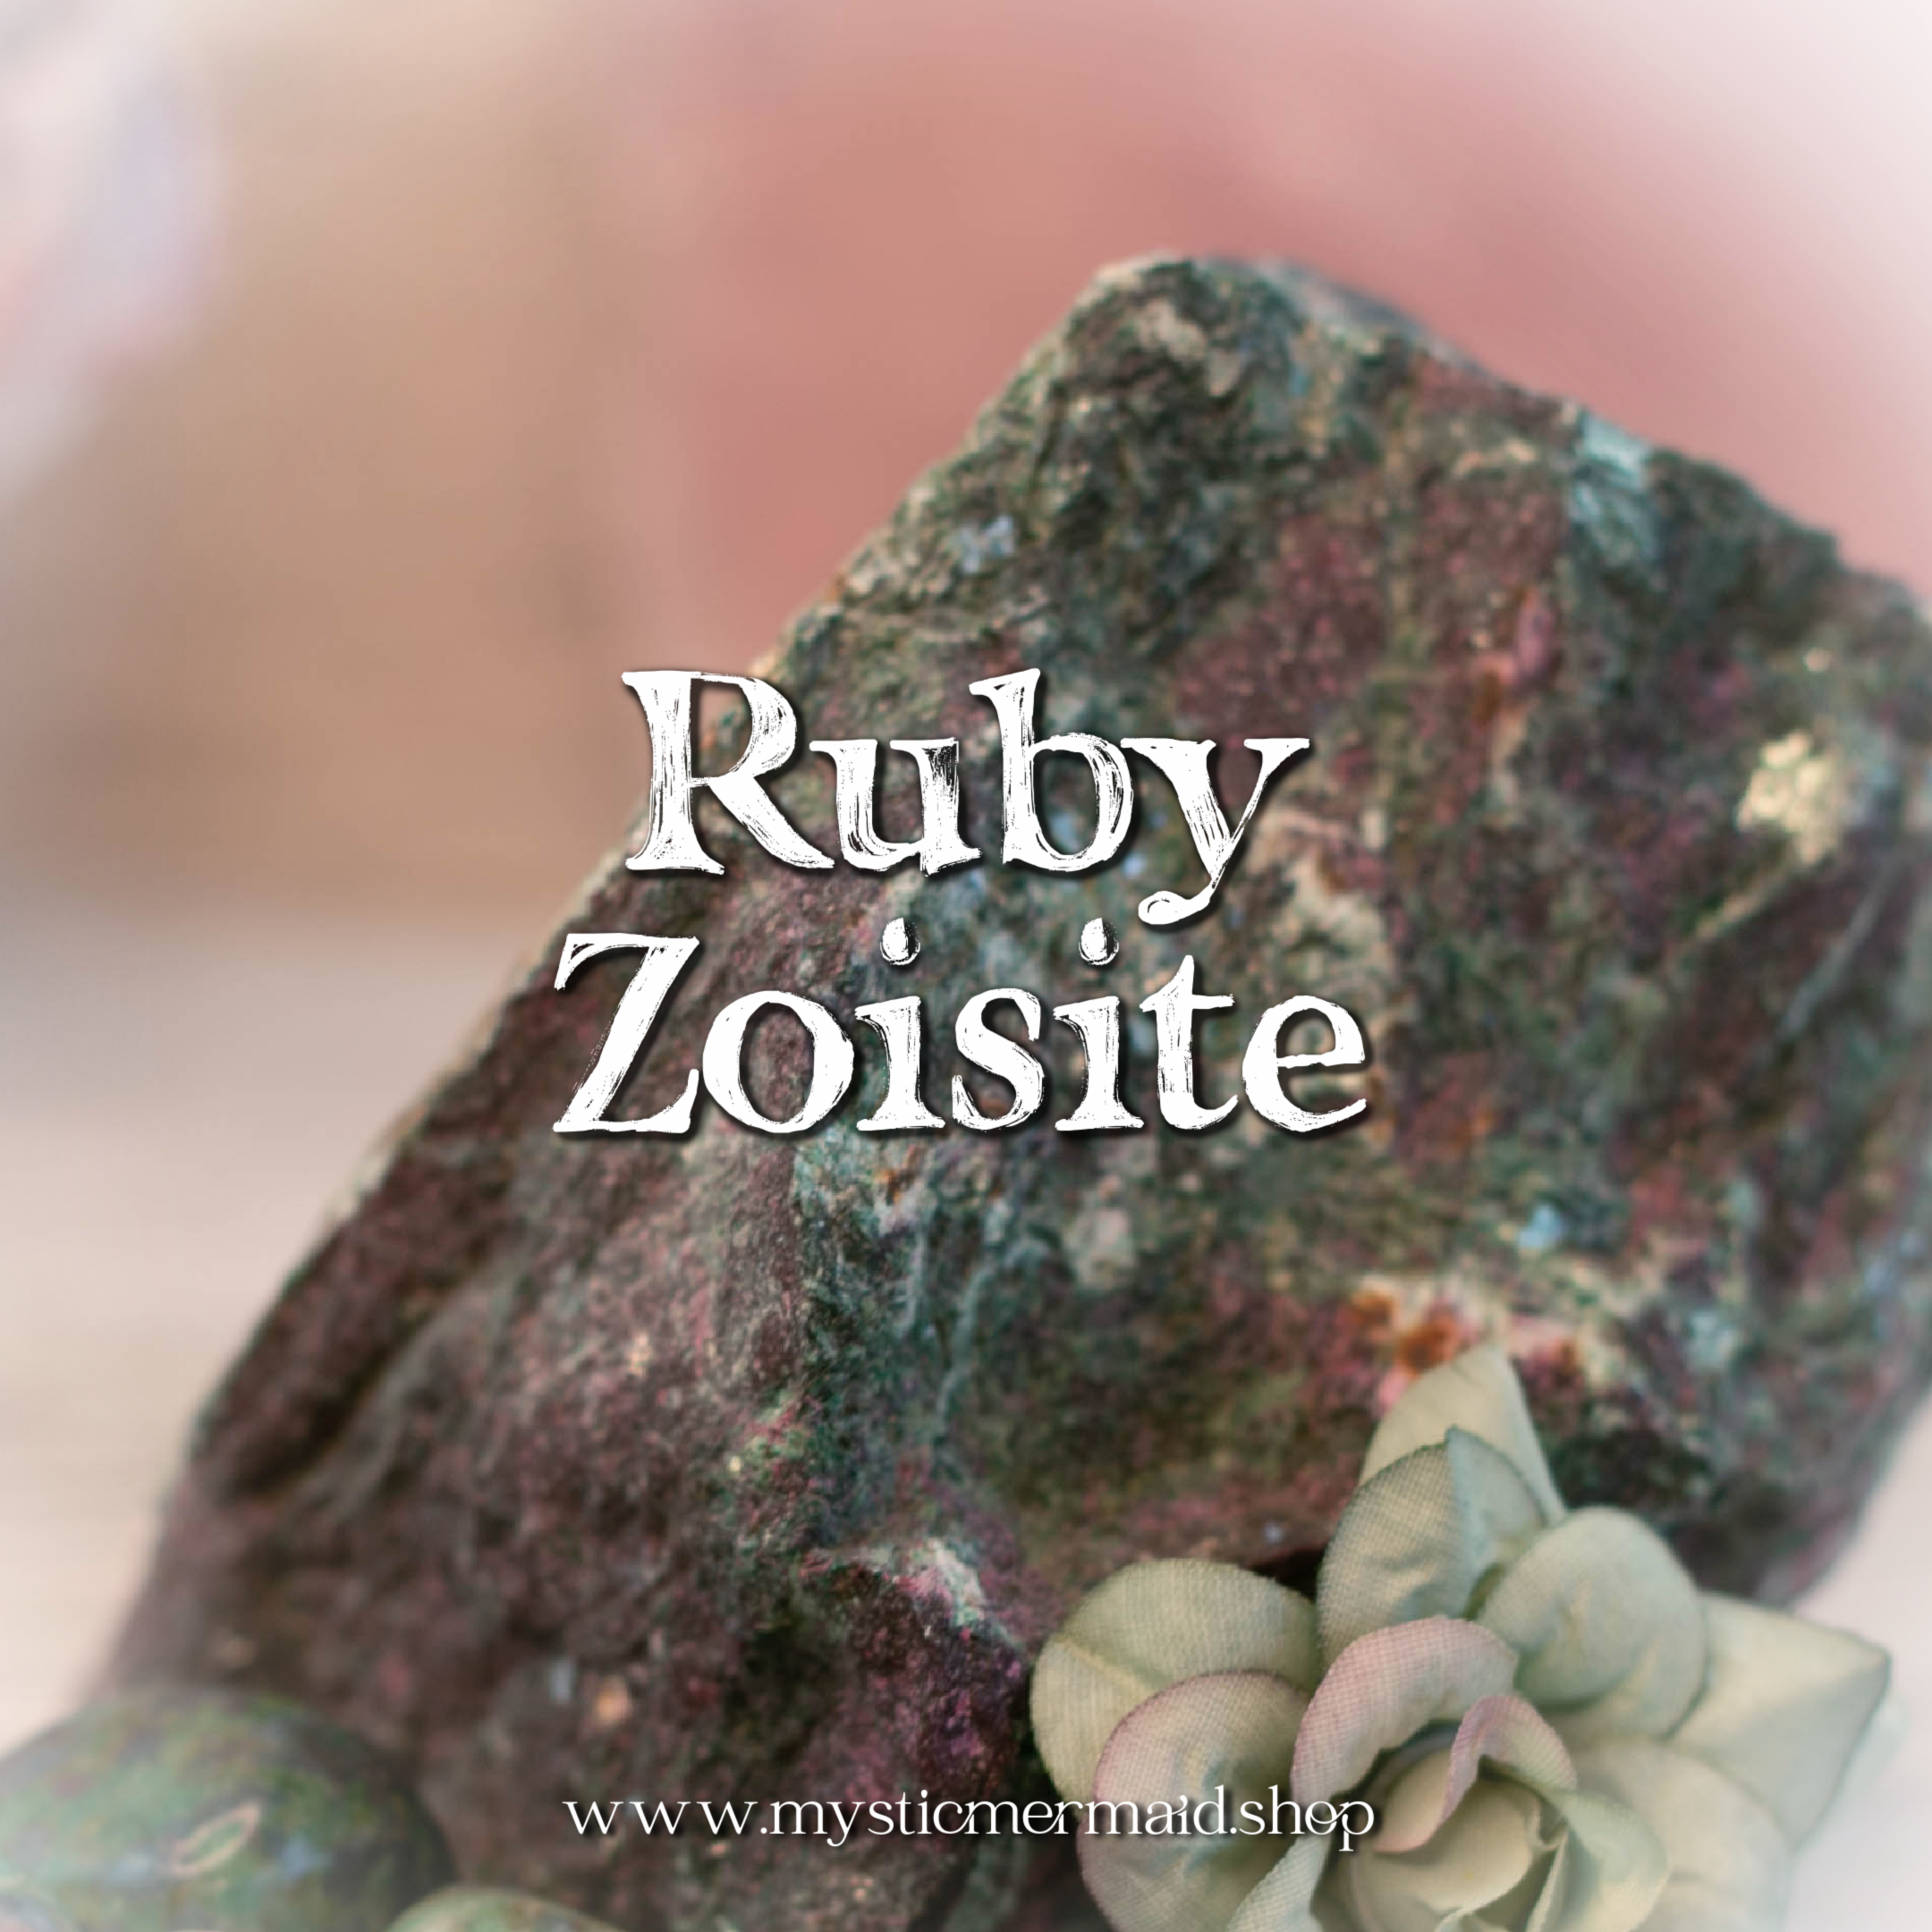 Ruby in Zoisite Ruby Zoisite Metaphysical Crystal Properties Mystic Mermaid